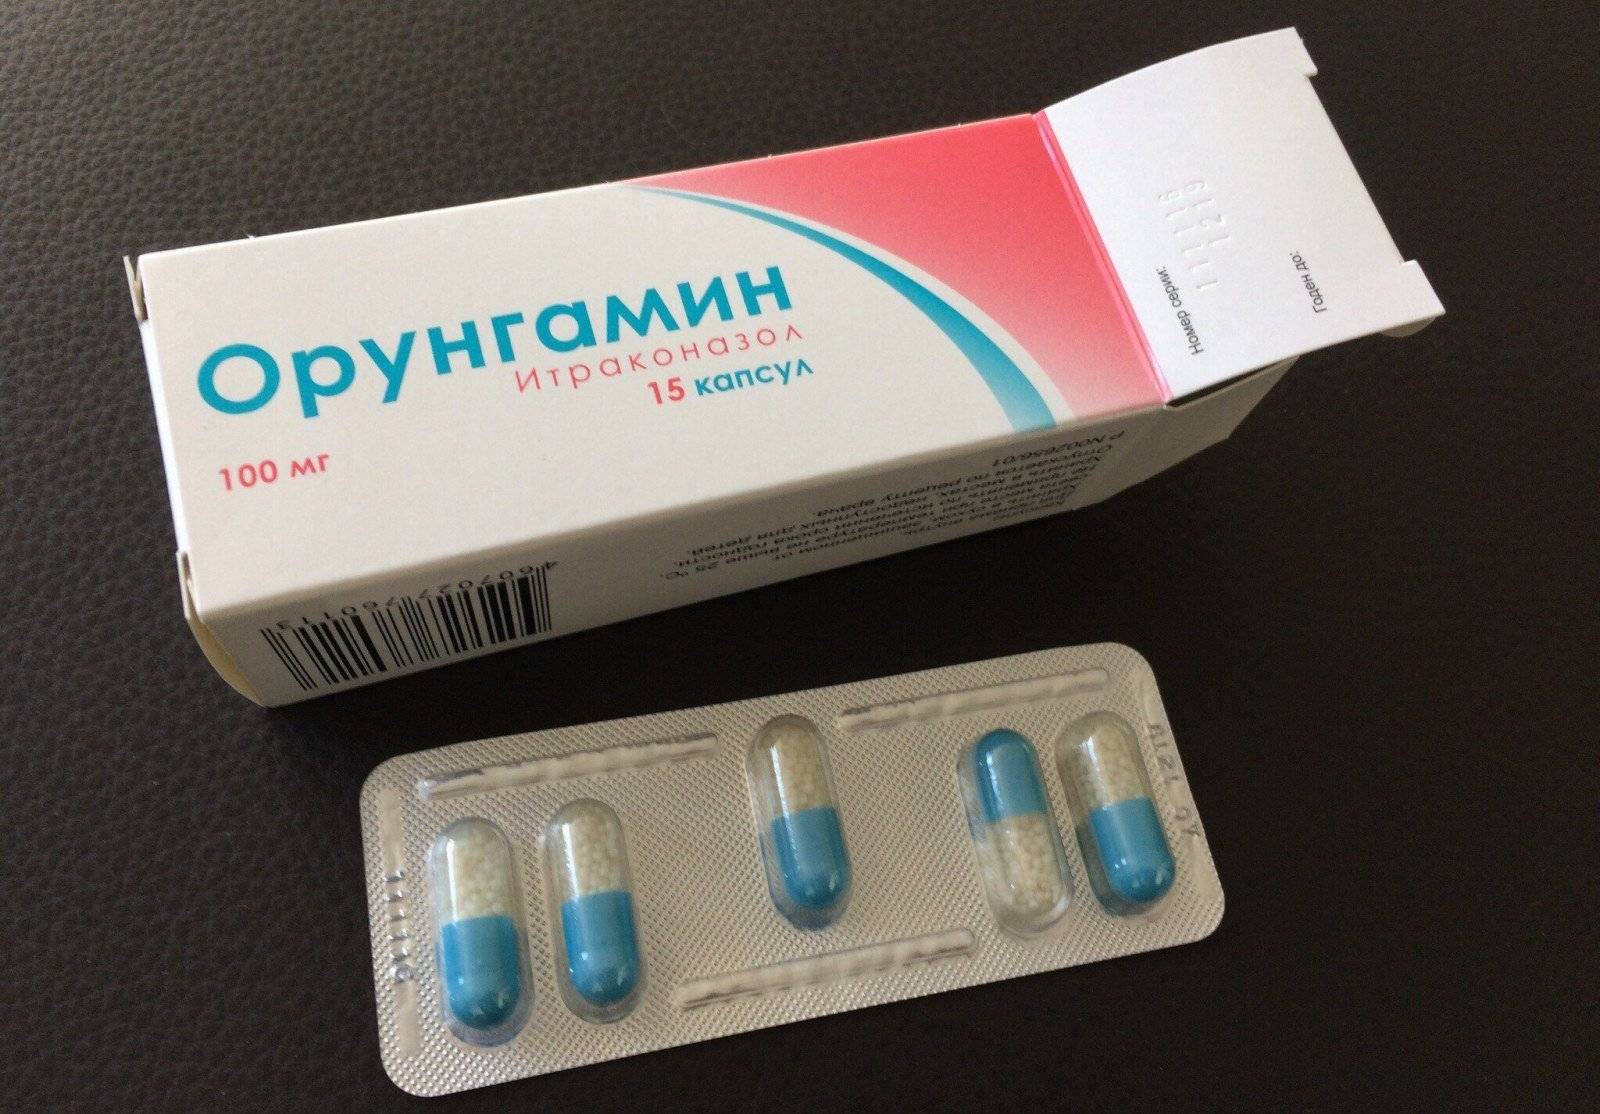 Орунгамин таблетки - инструкция по применению, отзывы